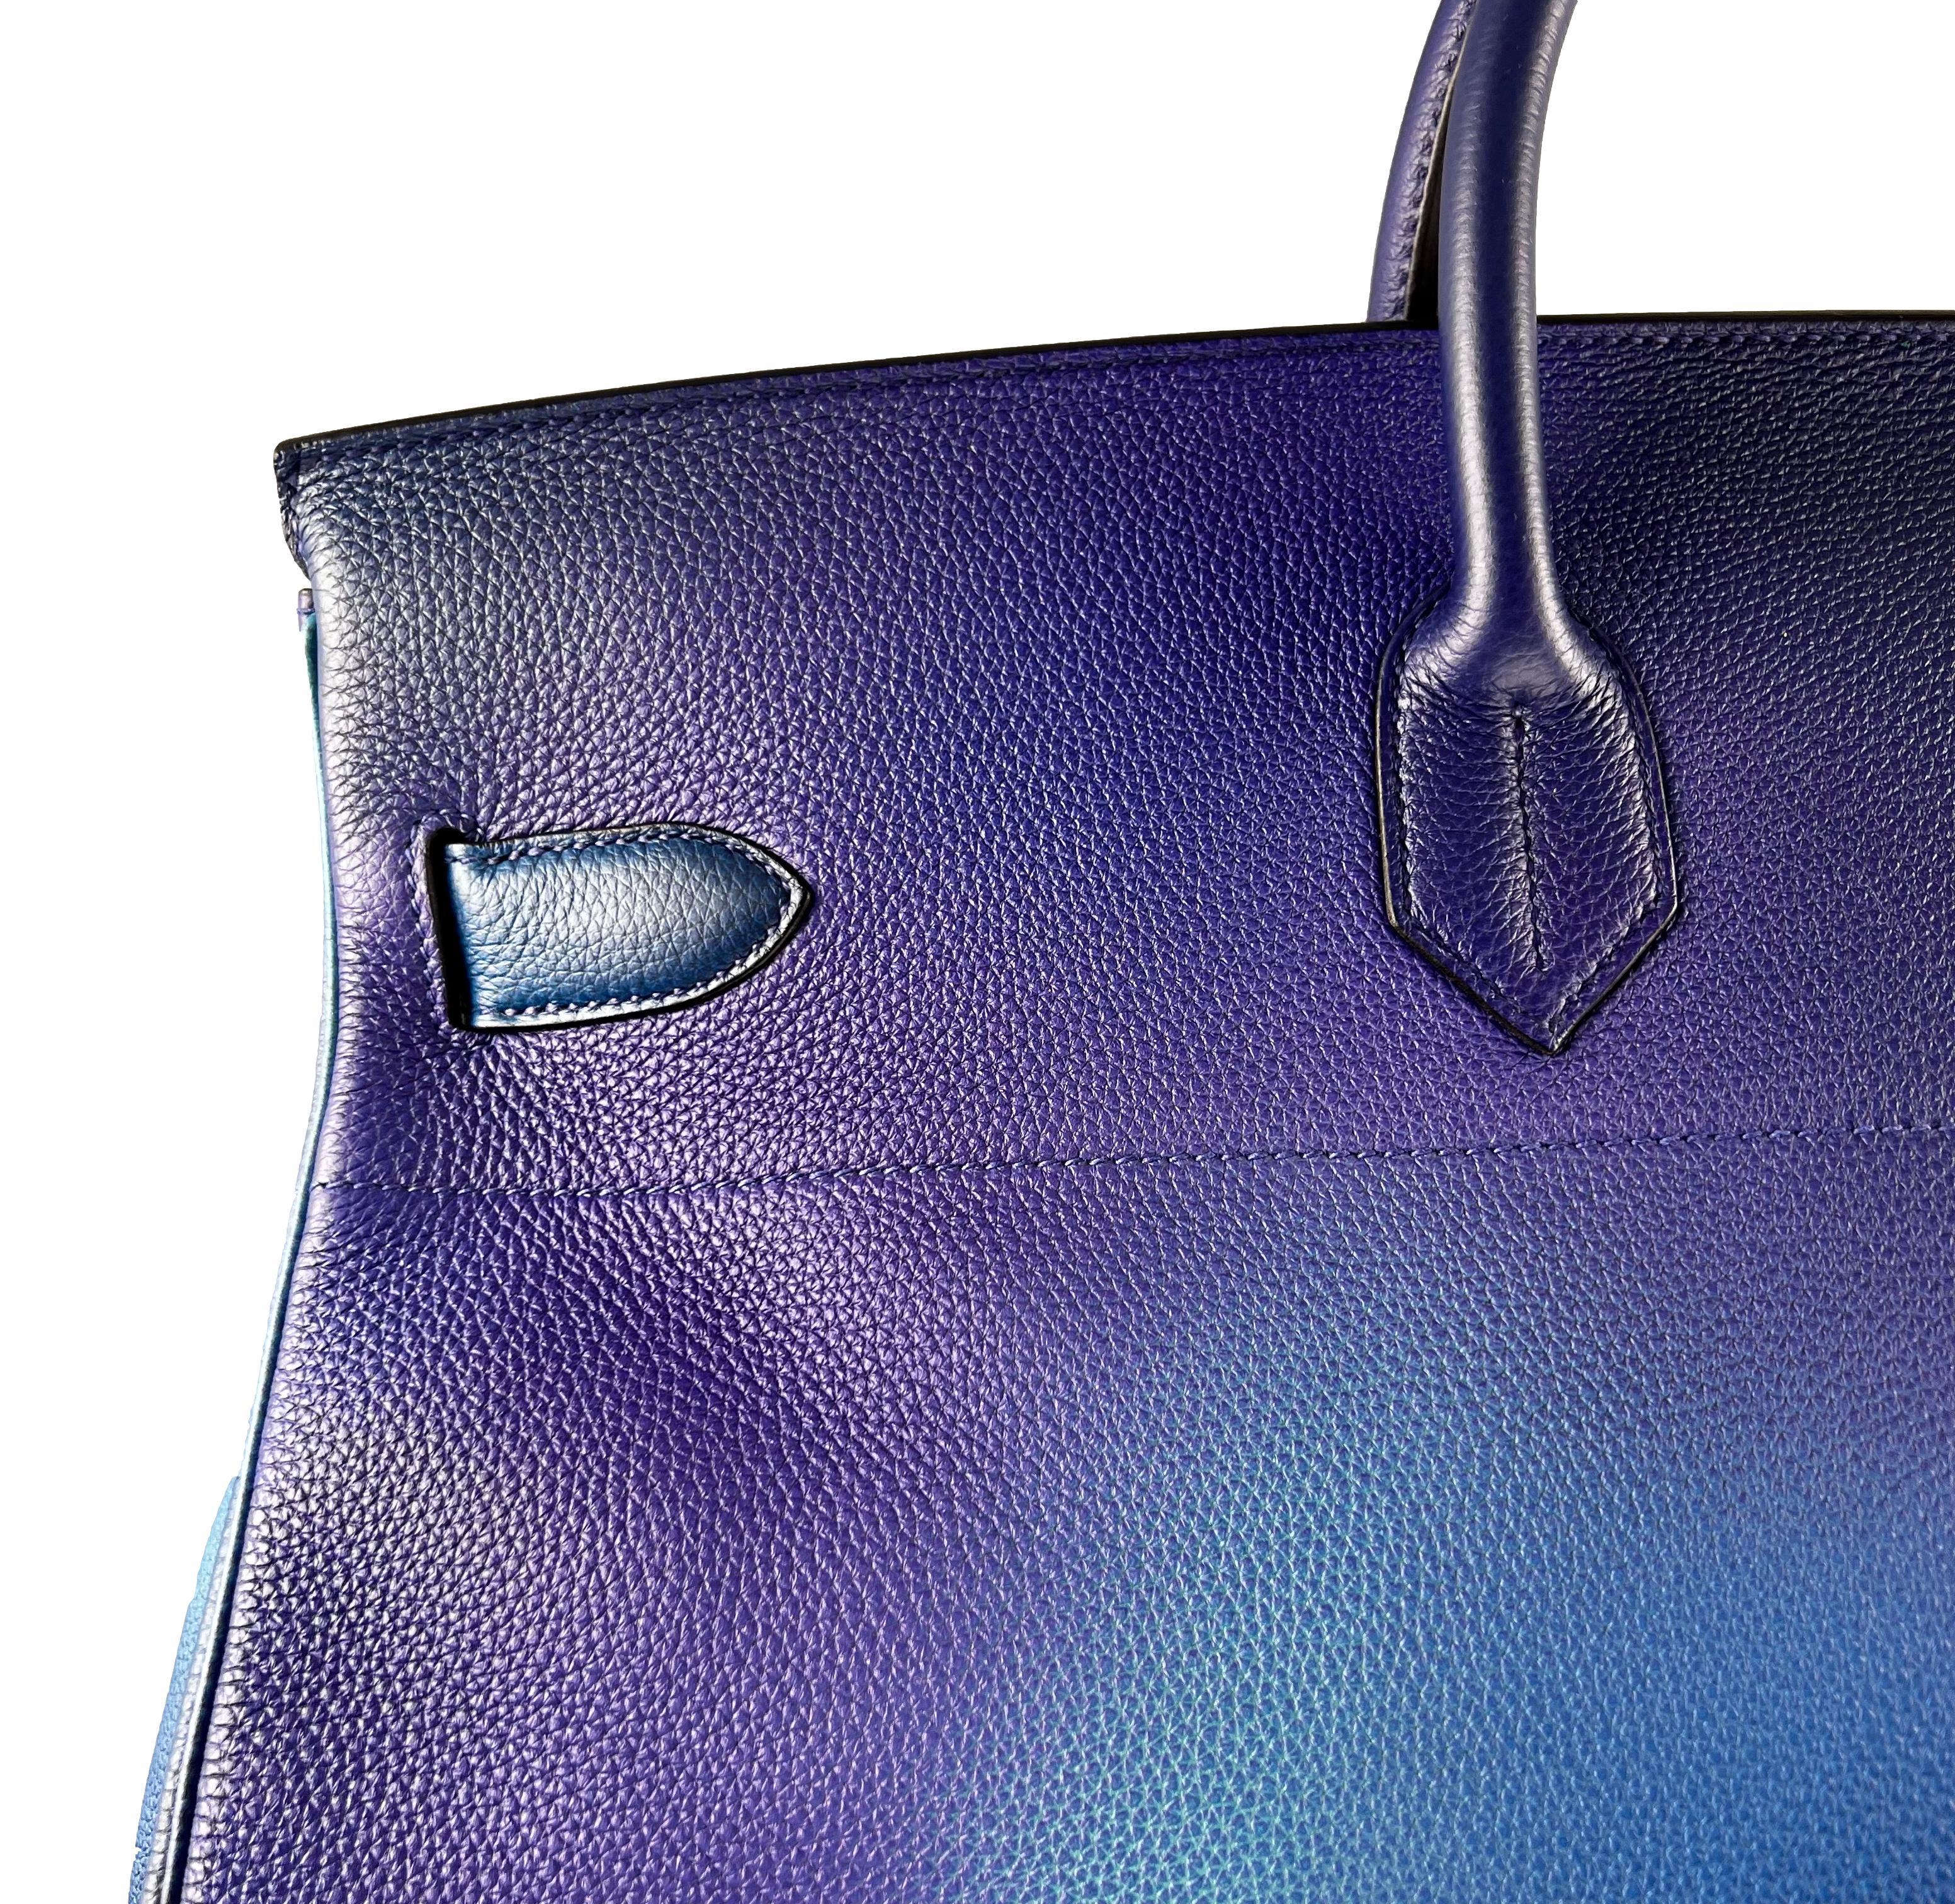 Hermès SS19 Ombré Haut à Courroies Cosmos HAC 50 Nuit Violet Limited Edition Bag 2